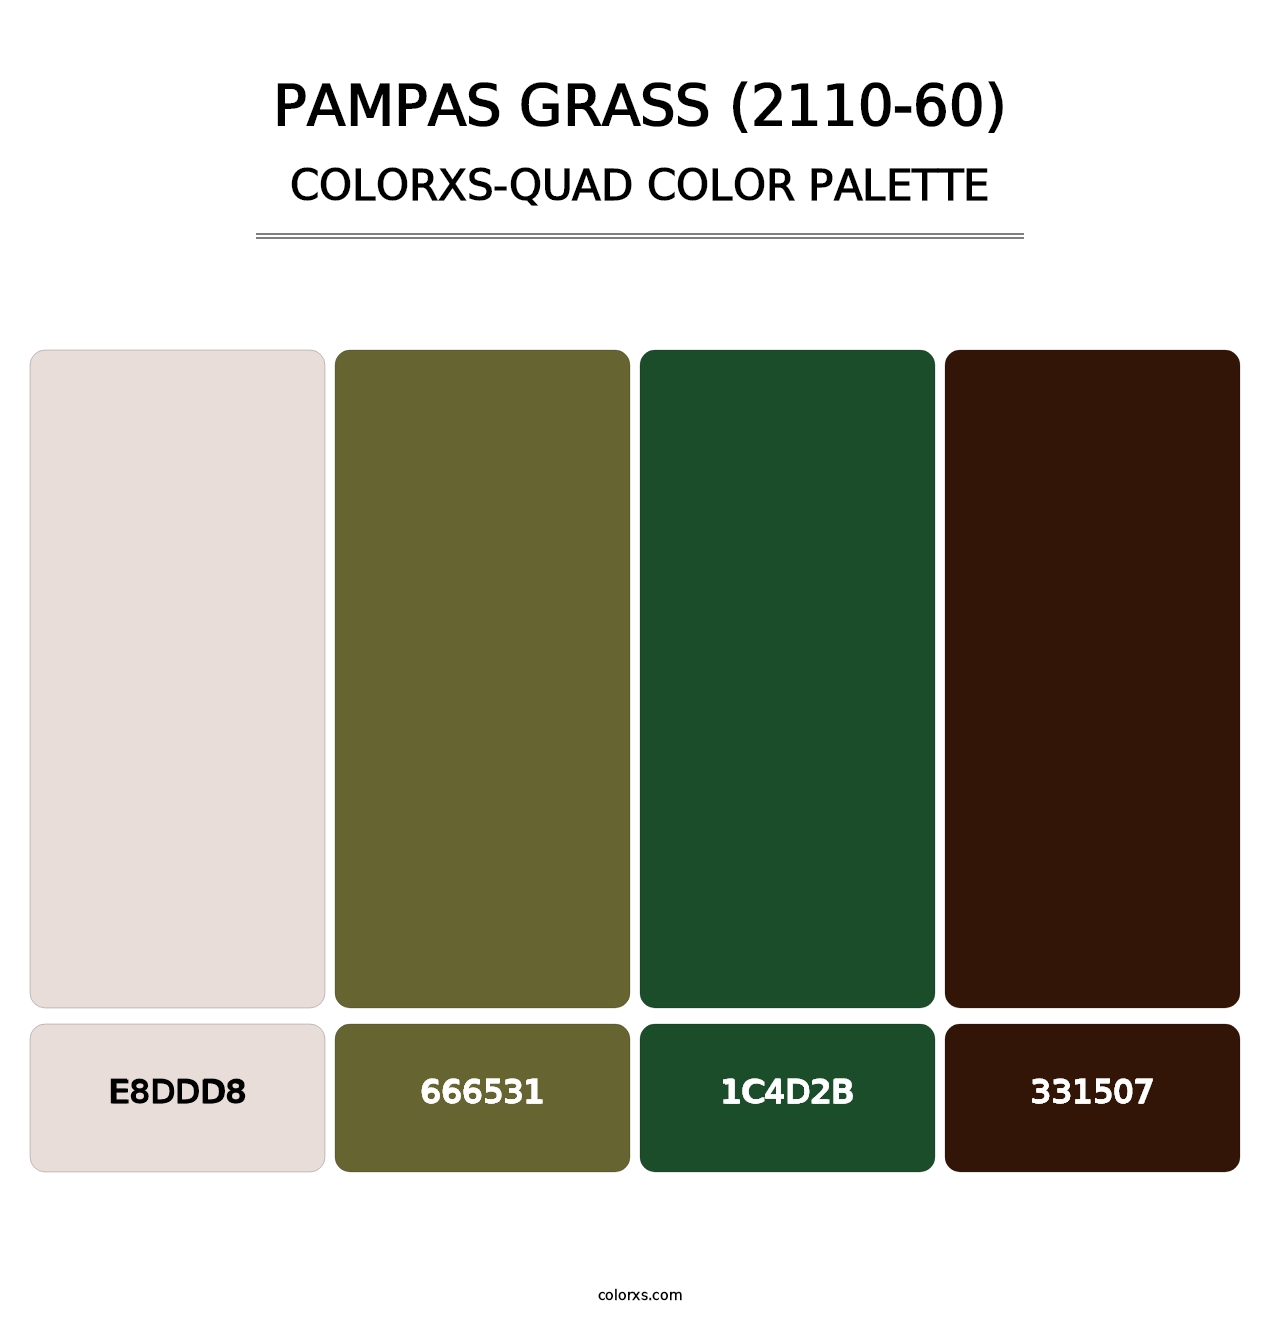 Pampas Grass (2110-60) - Colorxs Quad Palette